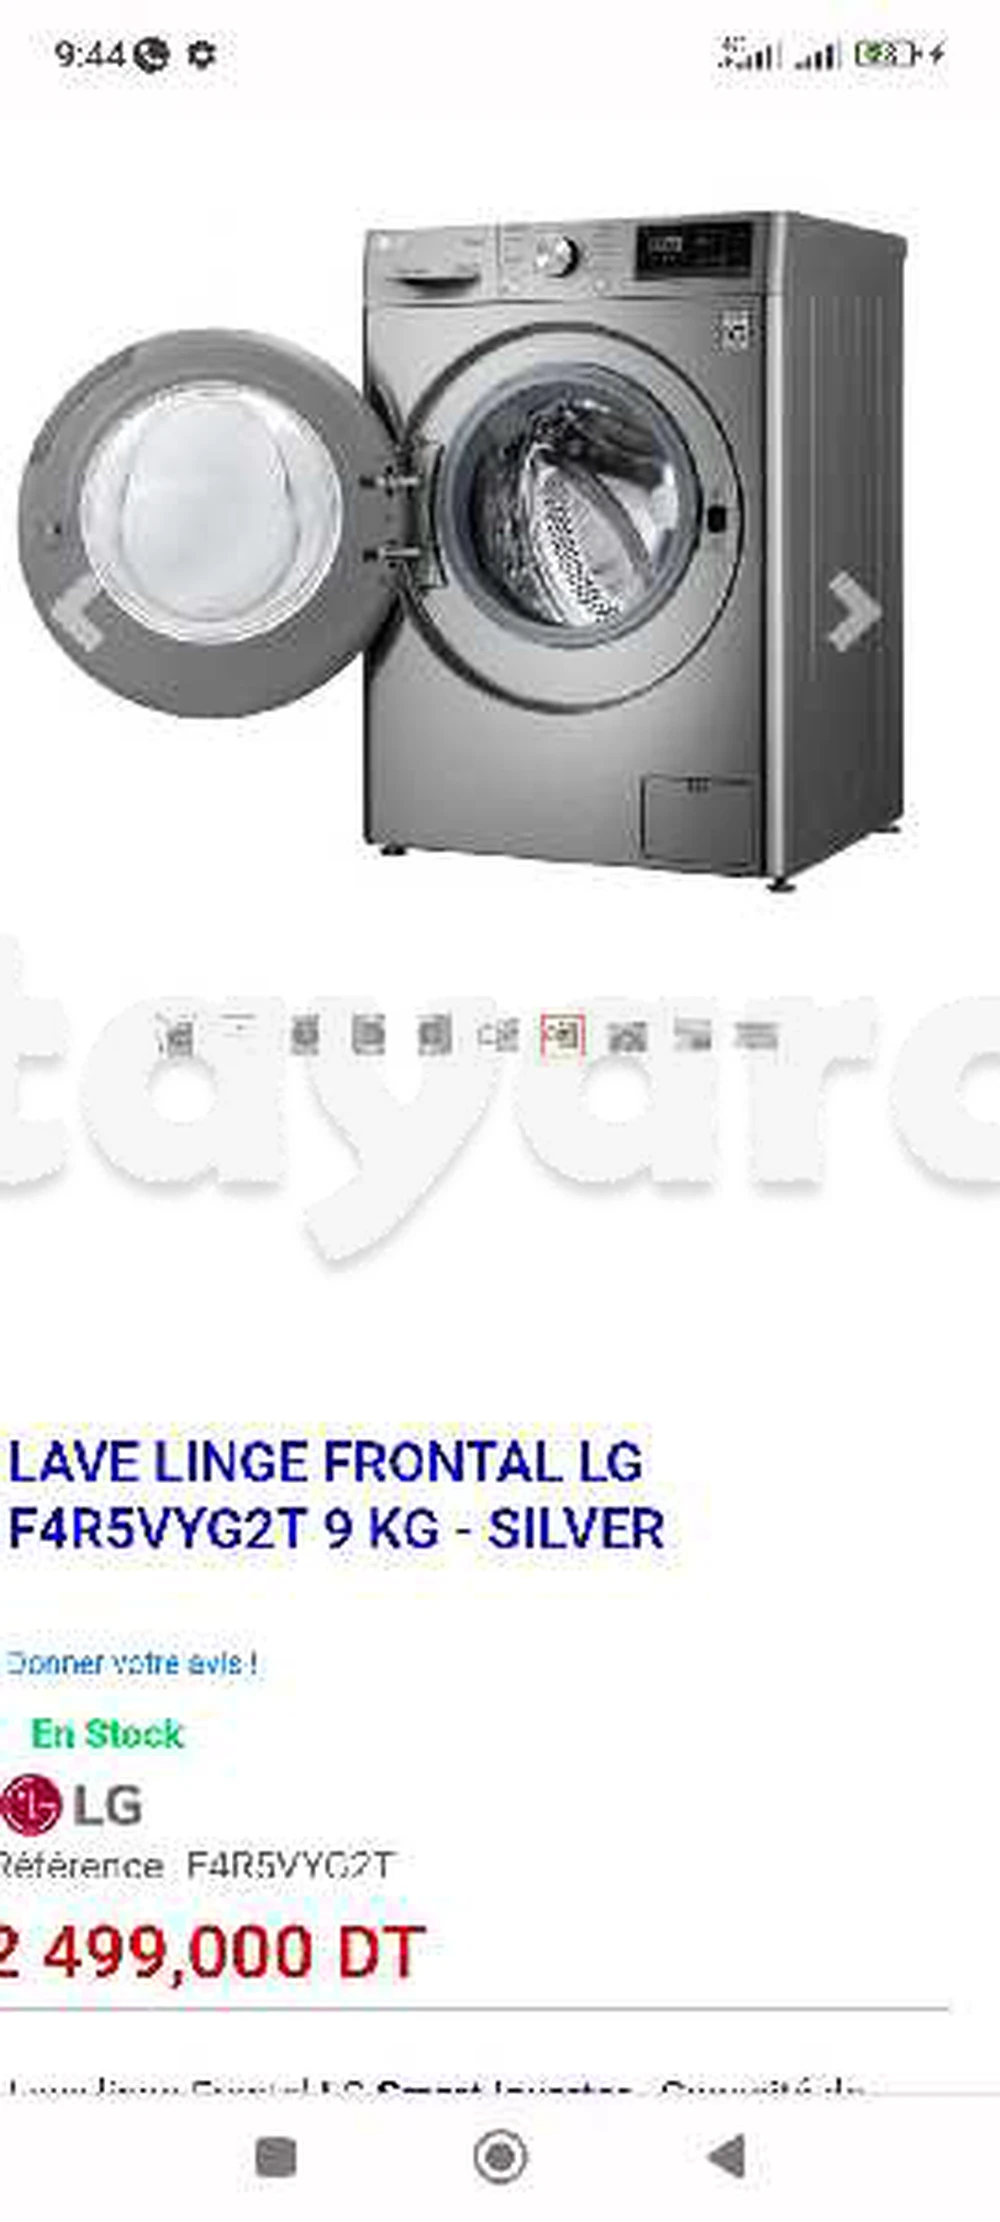 Lave Linge Frontal LG F4R5VYG2T 9 KG - Silver